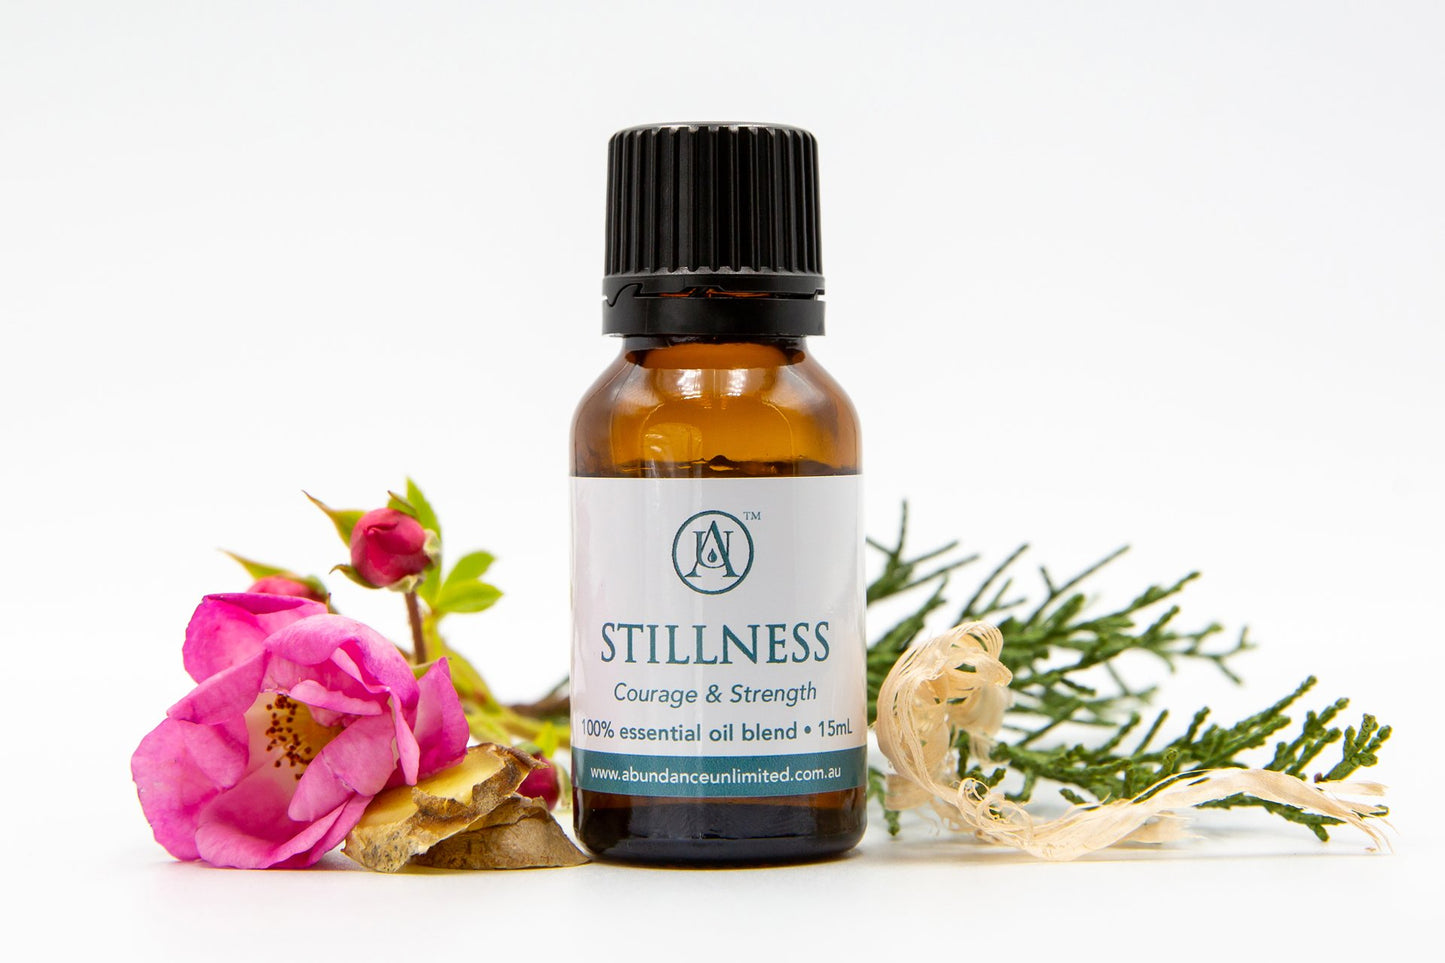 Abundance Essential Oil Blends - Stillness